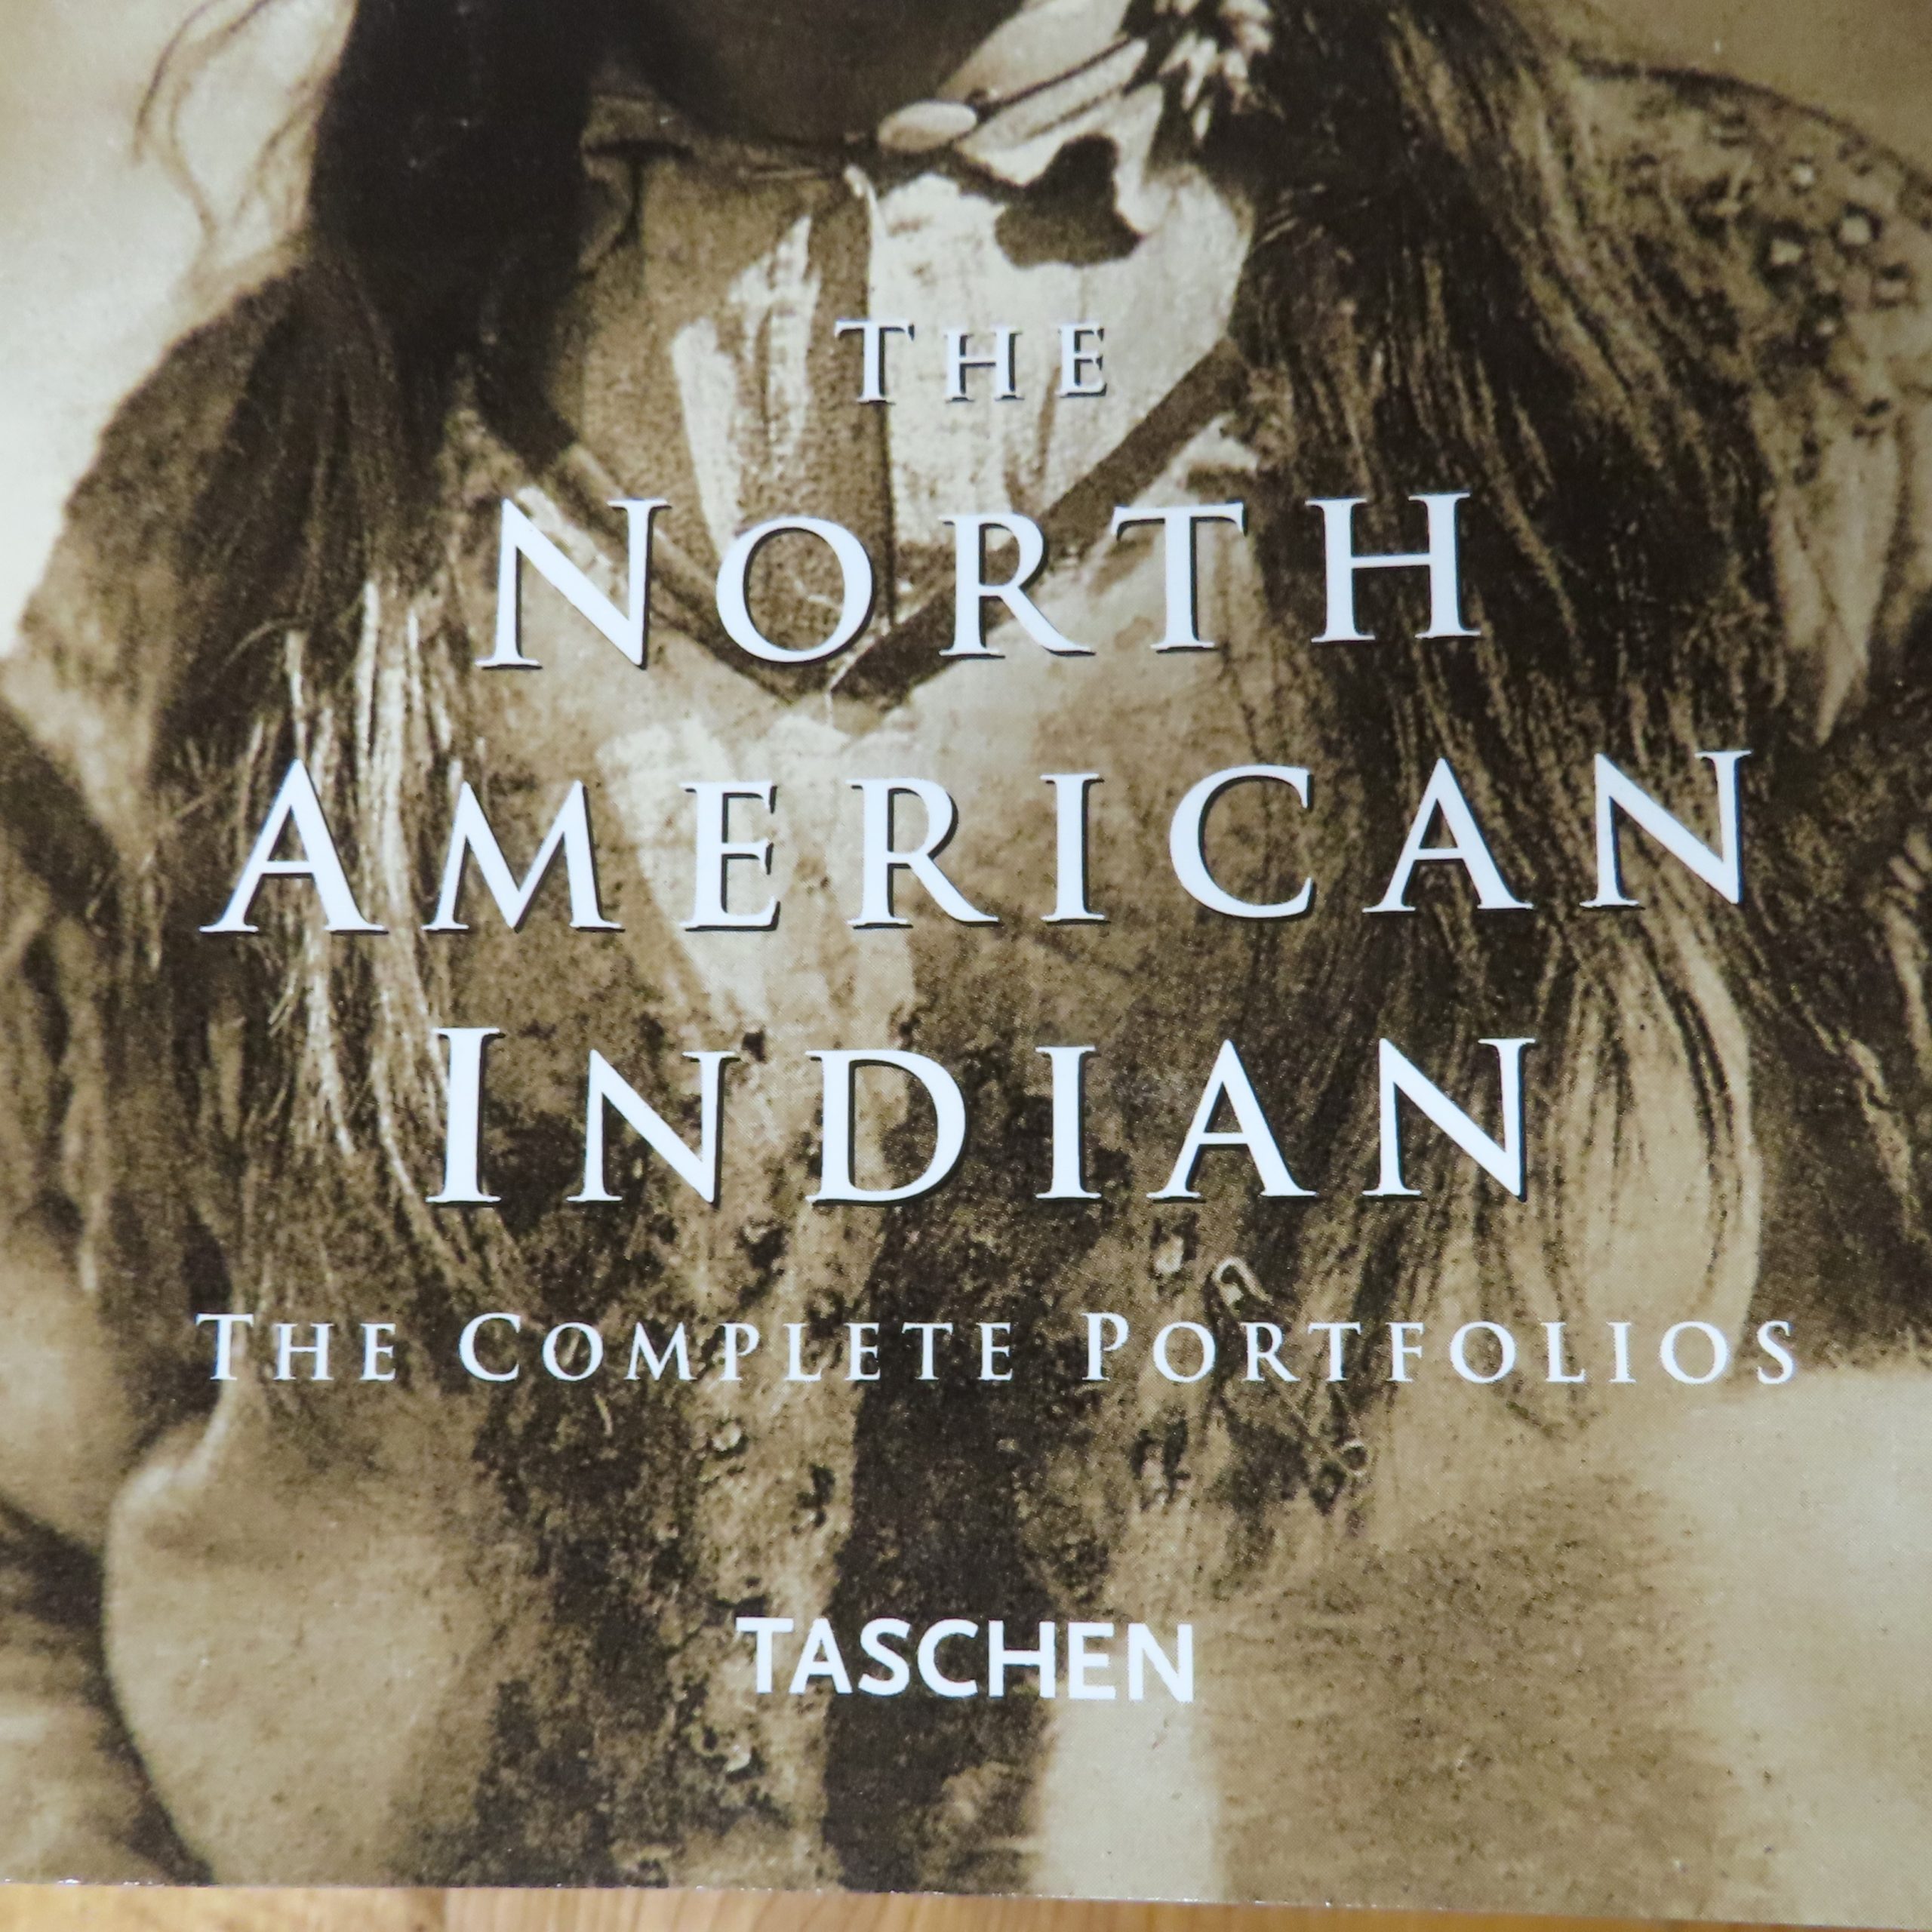 Boek “The North American Indian” van Edward S. Curtis